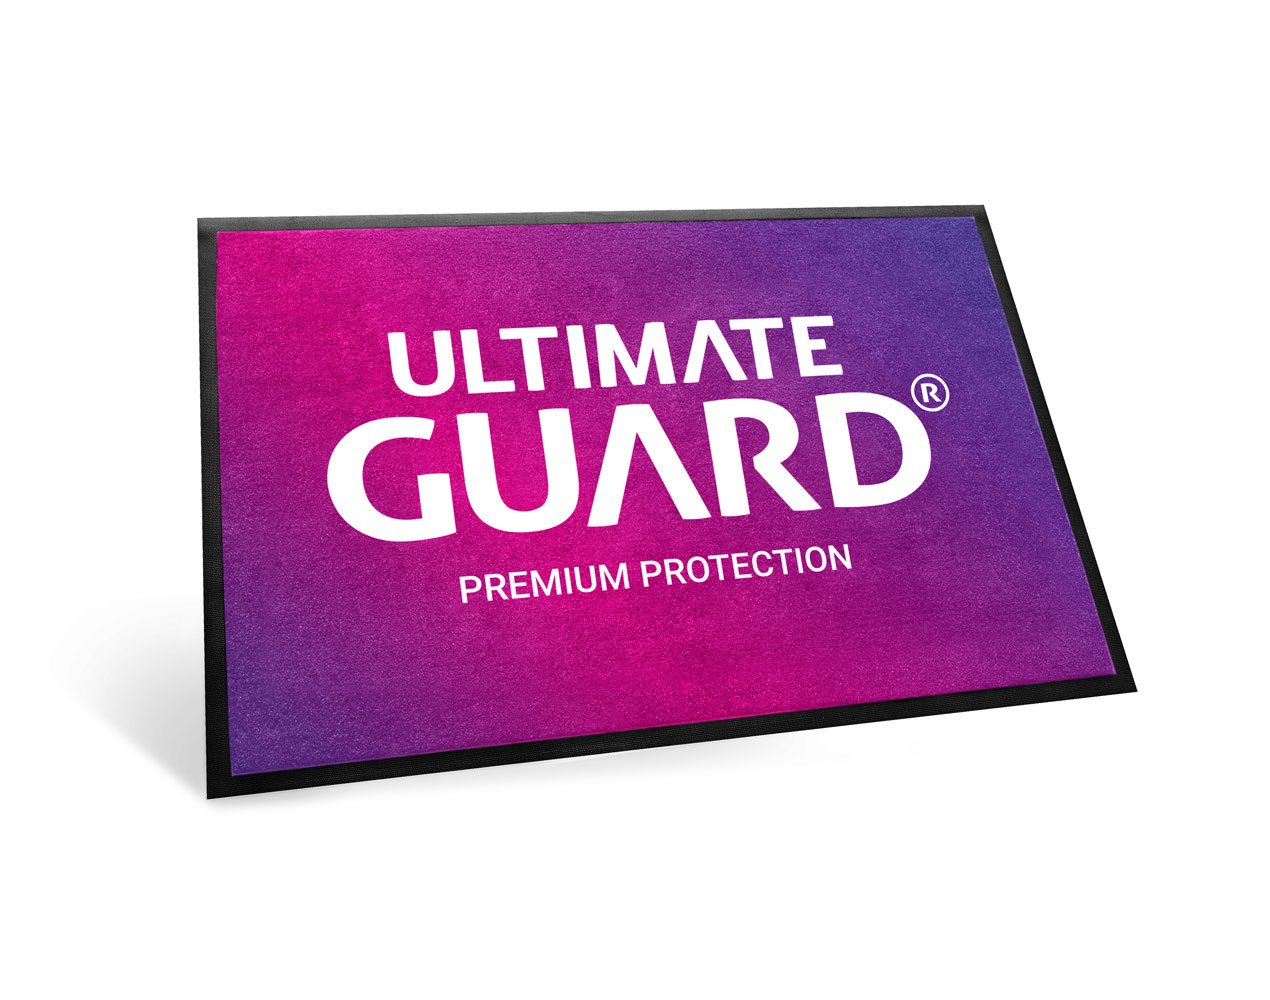 Ultimate Guard Store Carpet 60 x 90 cm Purple Gradient